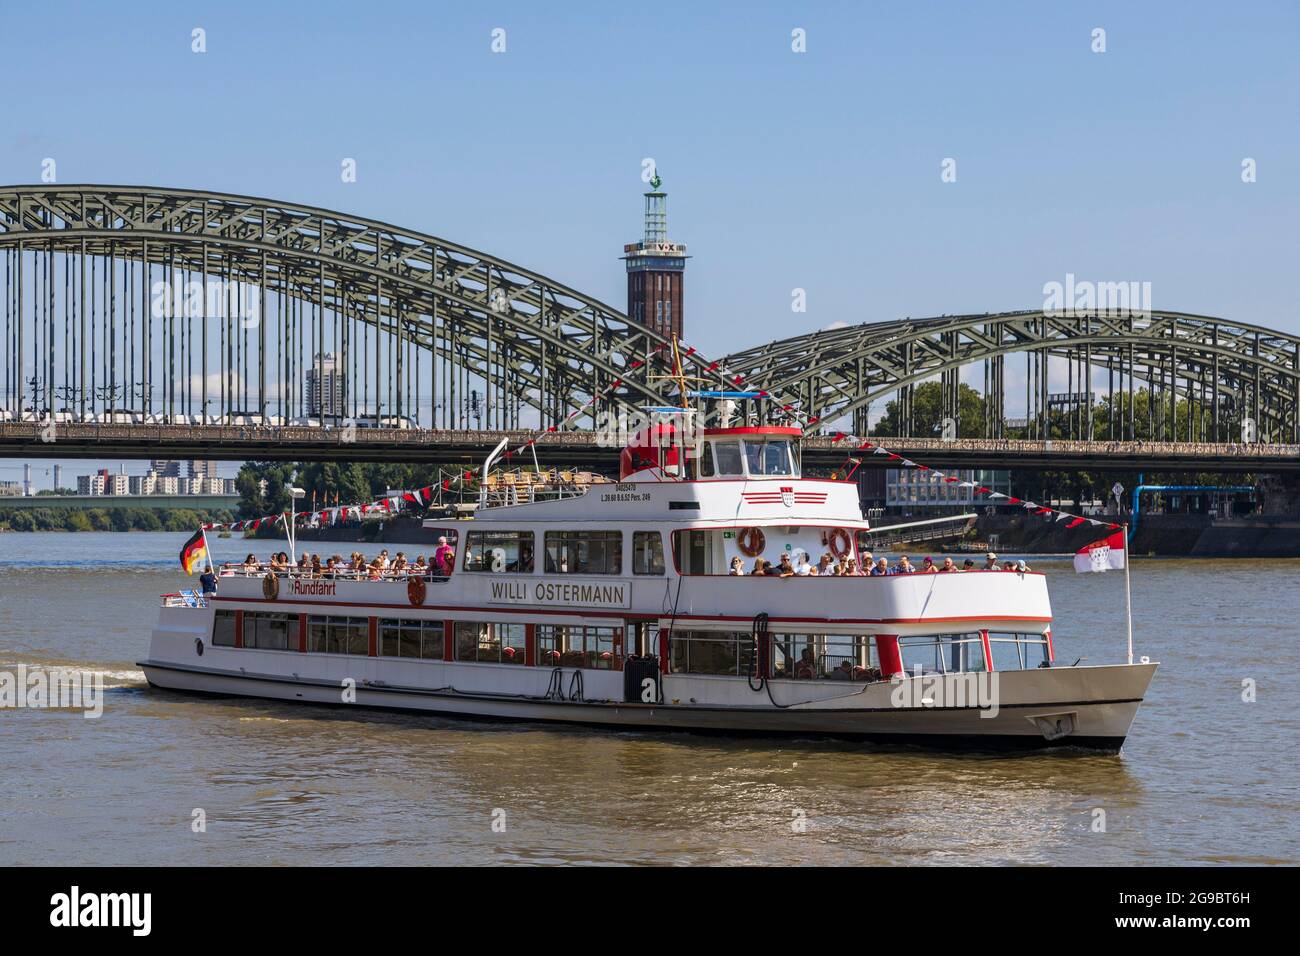 Willi Ostermann, bateau d'excursion sur le Rhin, Cologne, Rhénanie-du-Nord-Westphalie, Allemagne, Europe Banque D'Images